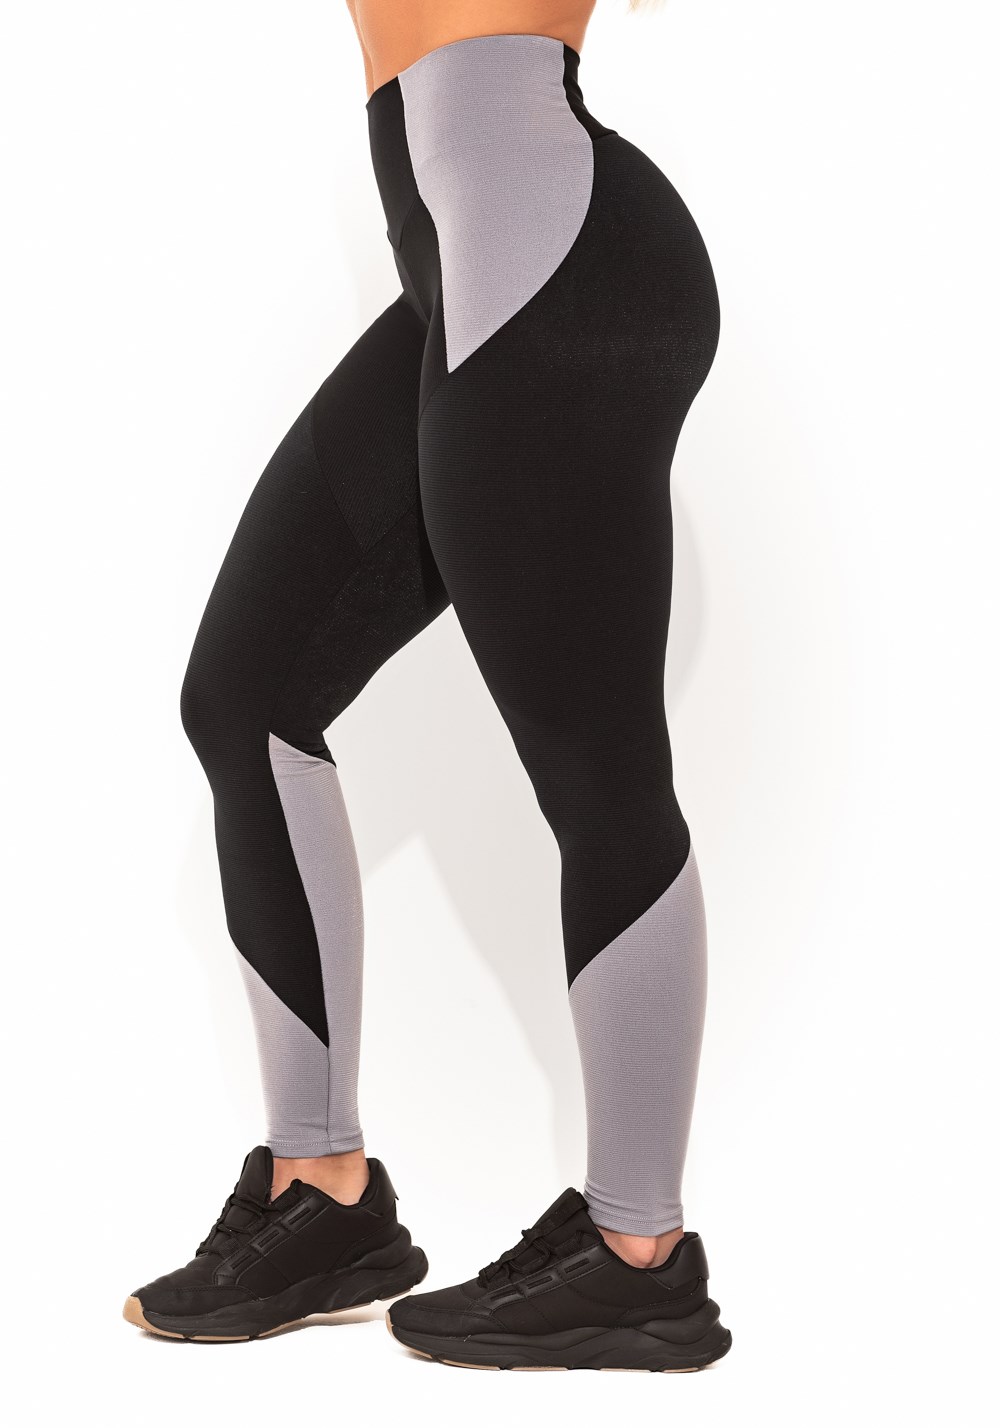 Legging fitness feminina preto e cinza com recortes canelado elegance